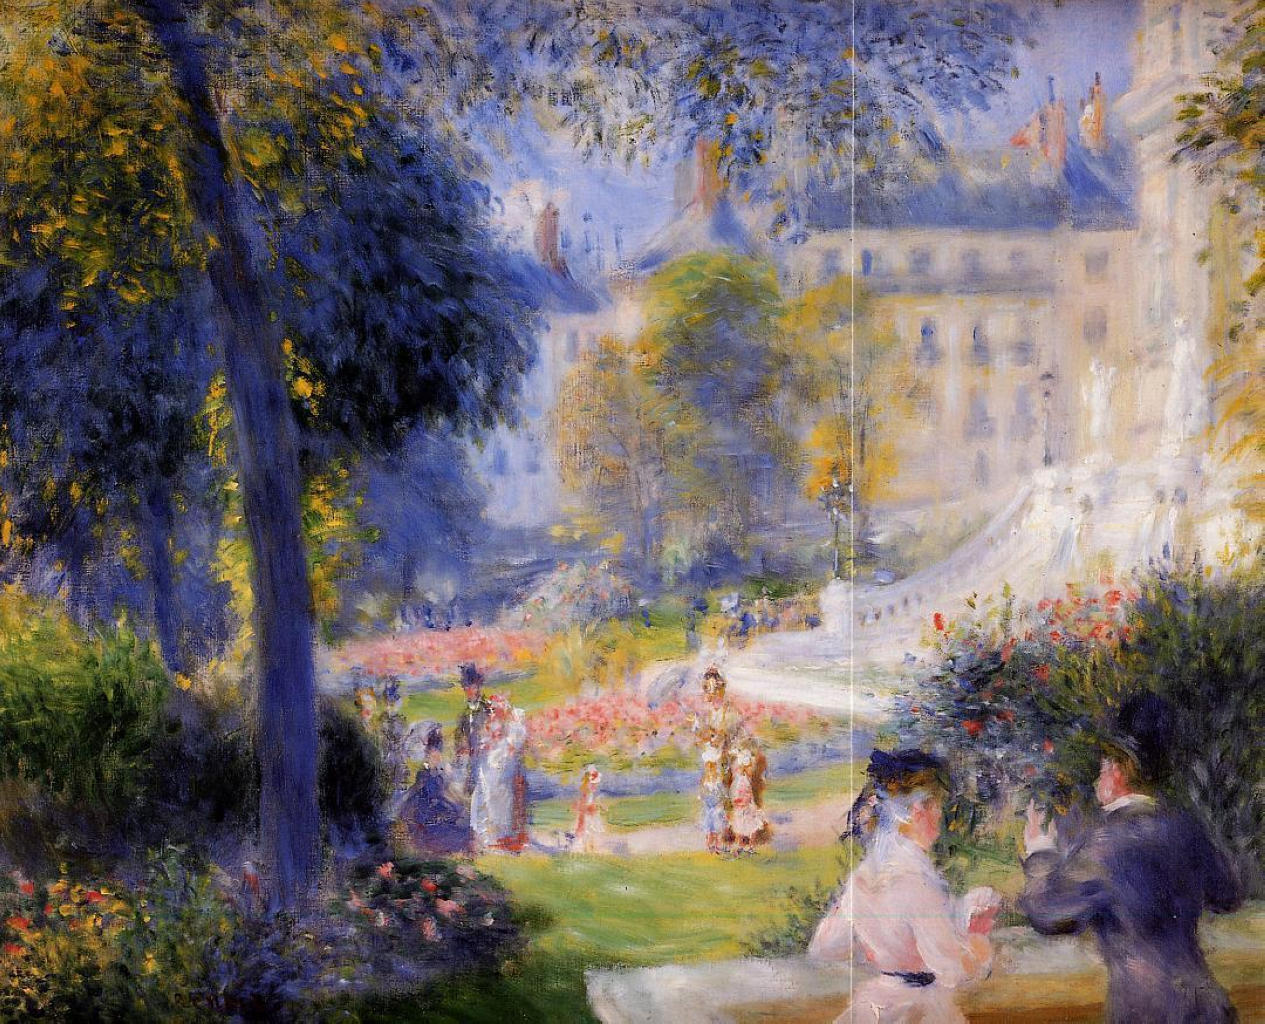 Pierre+Auguste+Renoir-1841-1-19 (608).jpg